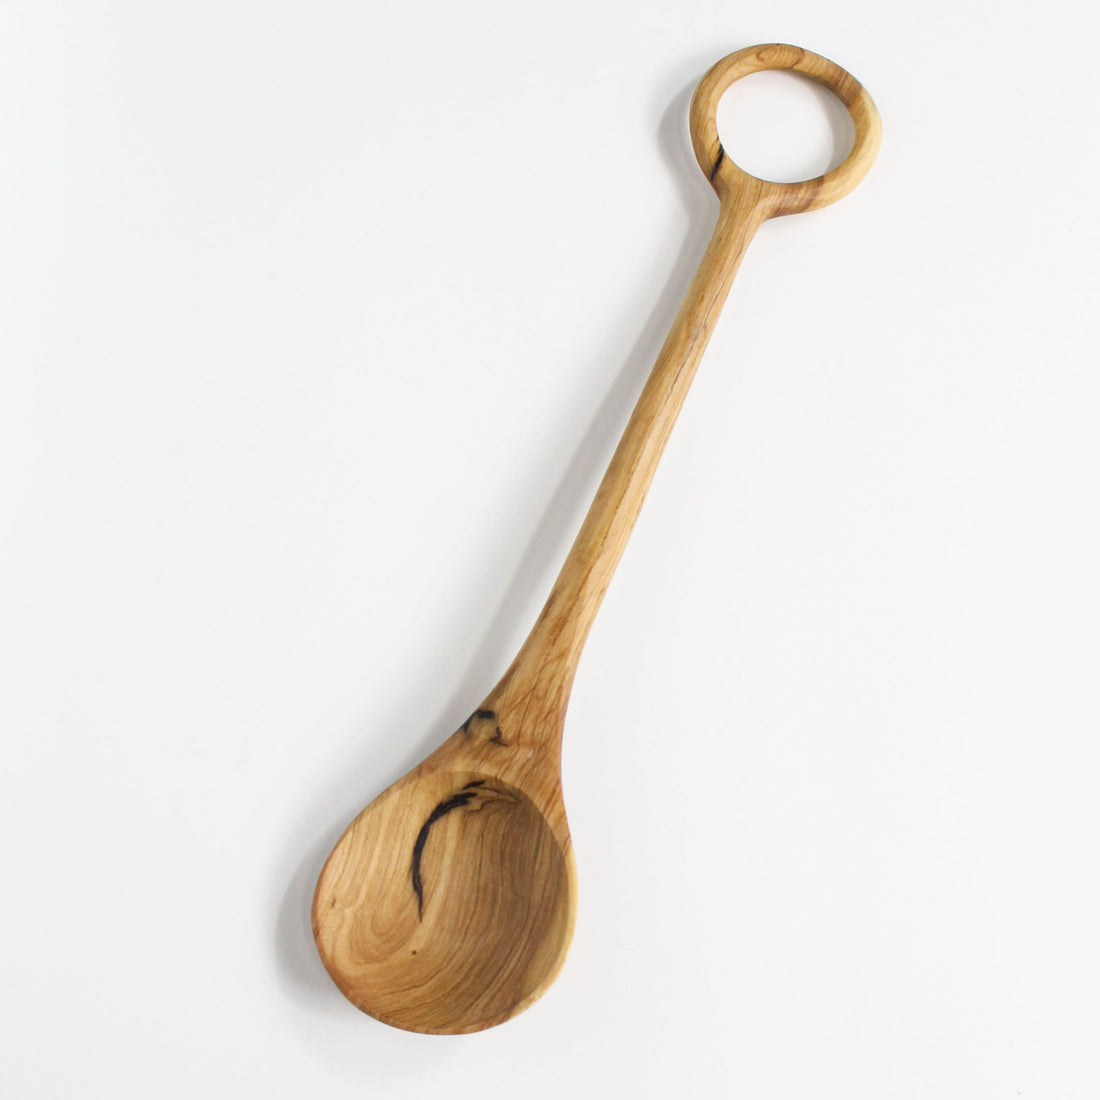 Olive wood spoon with loop handle